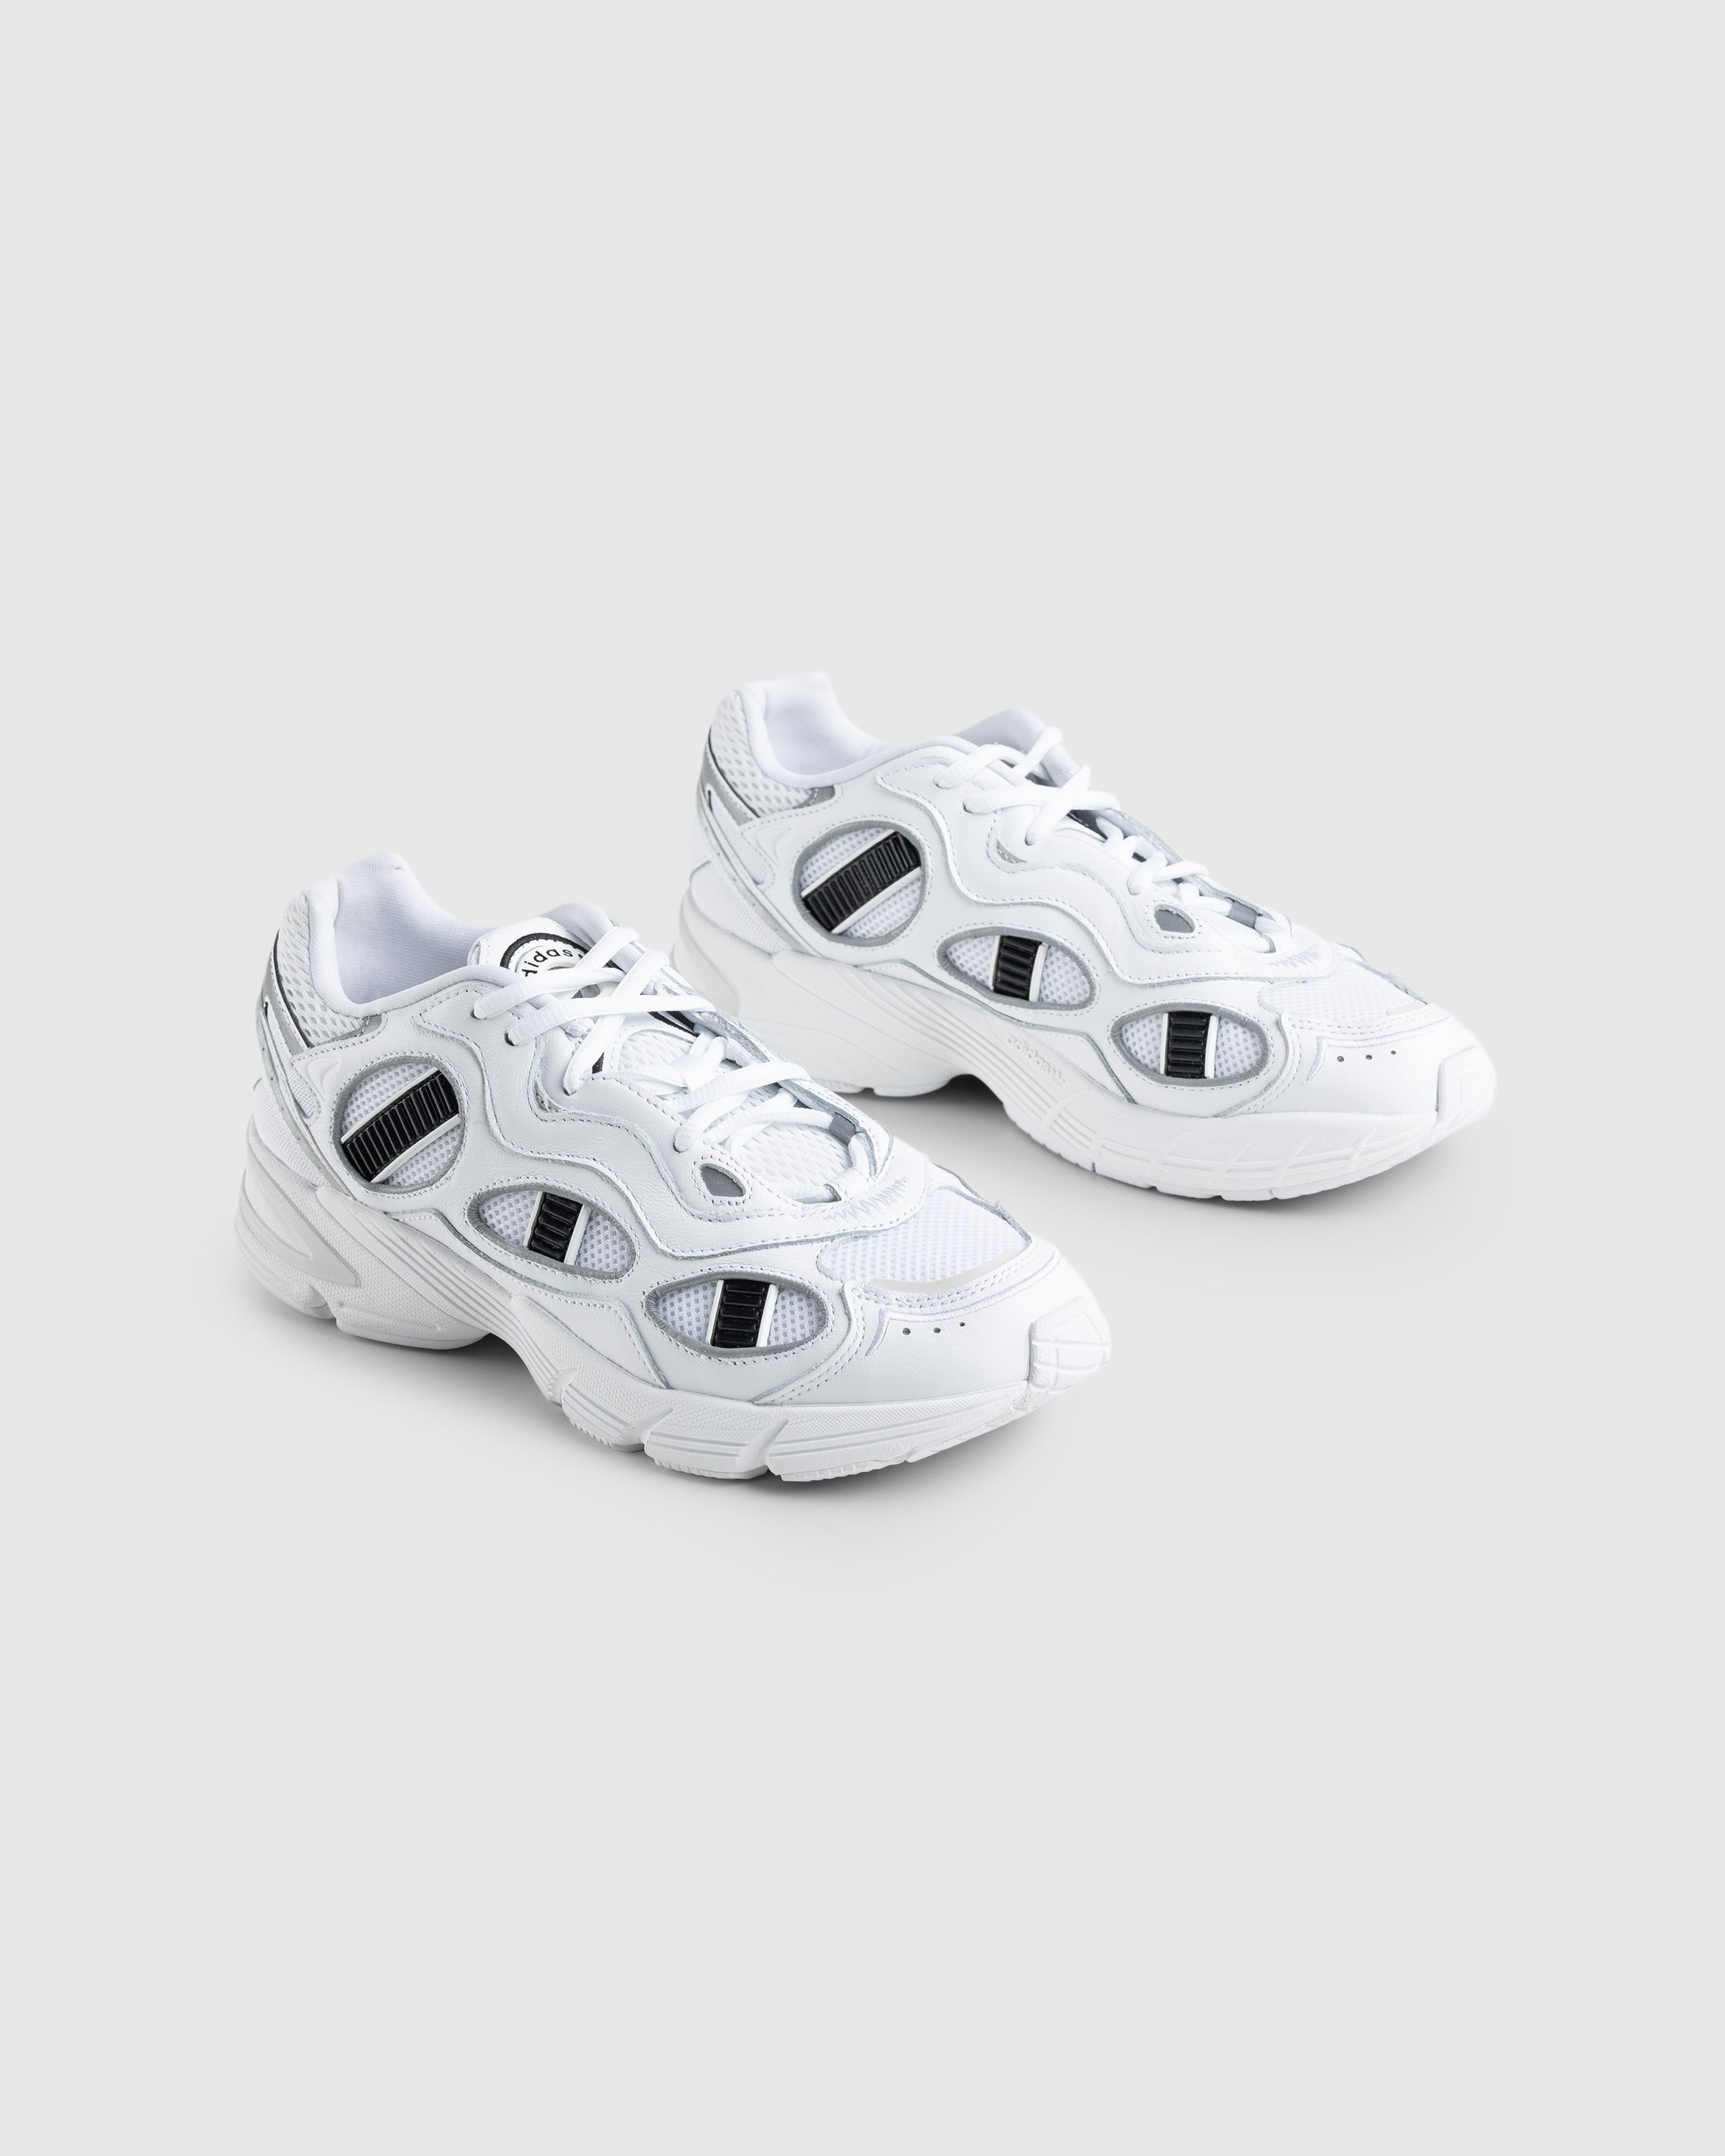 Adidas - Astir Sn White - Footwear - White - Image 3